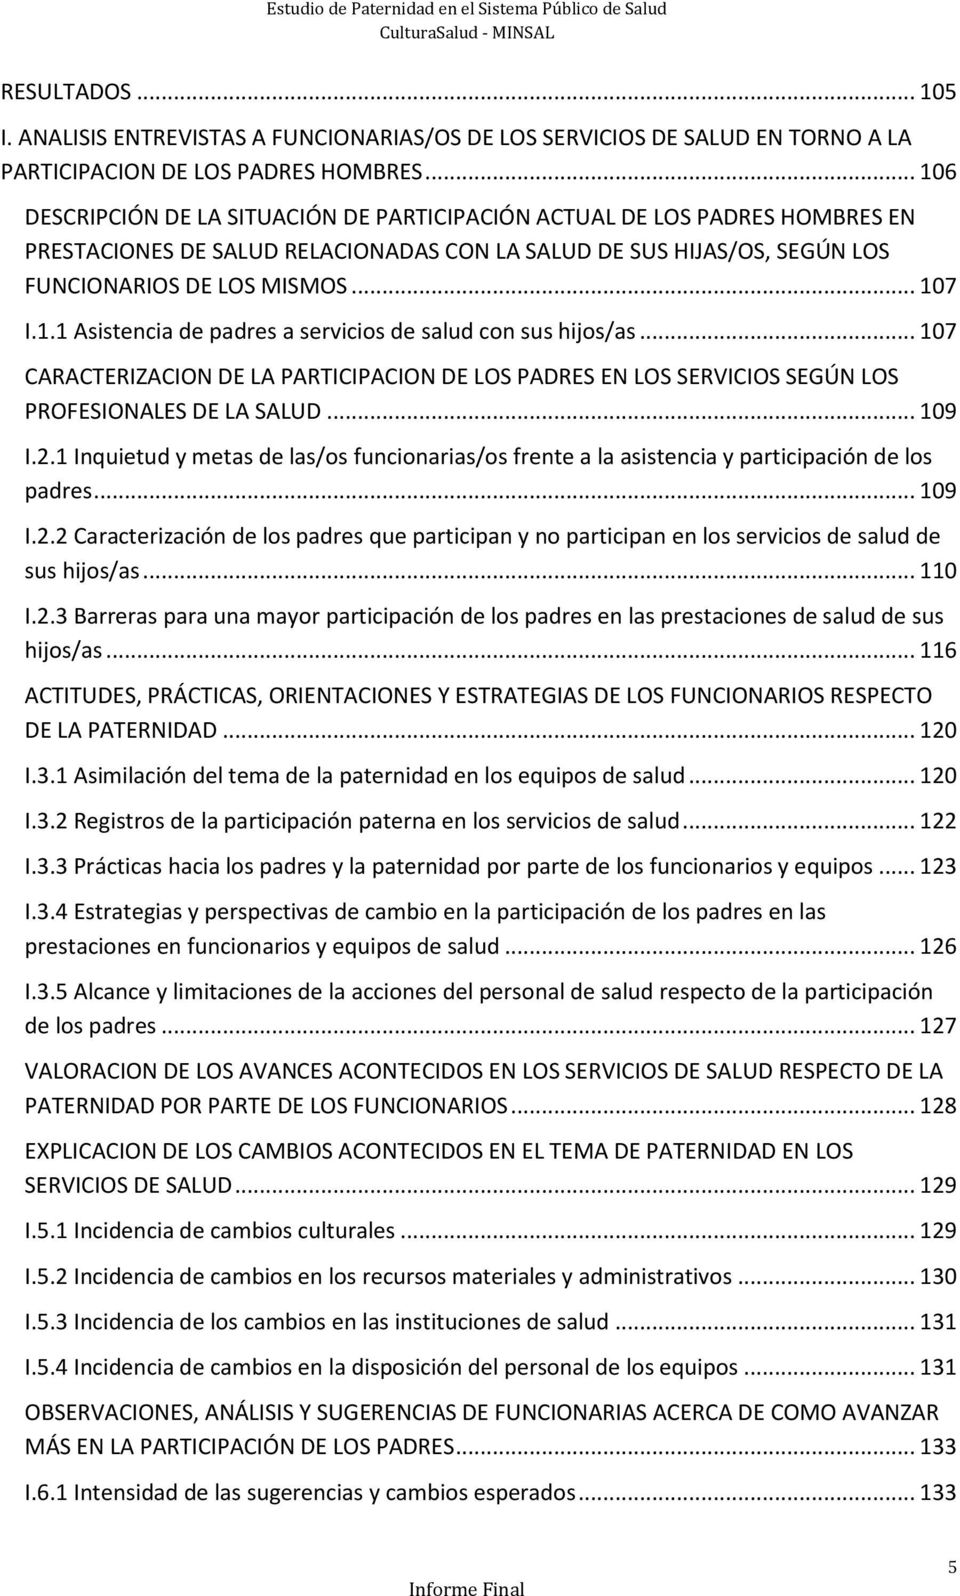 .. 107 CARACTERIZACION DE LA PARTICIPACION DE LOS PADRES EN LOS SERVICIOS SEGÚN LOS PROFESIONALES DE LA SALUD... 109 I.2.